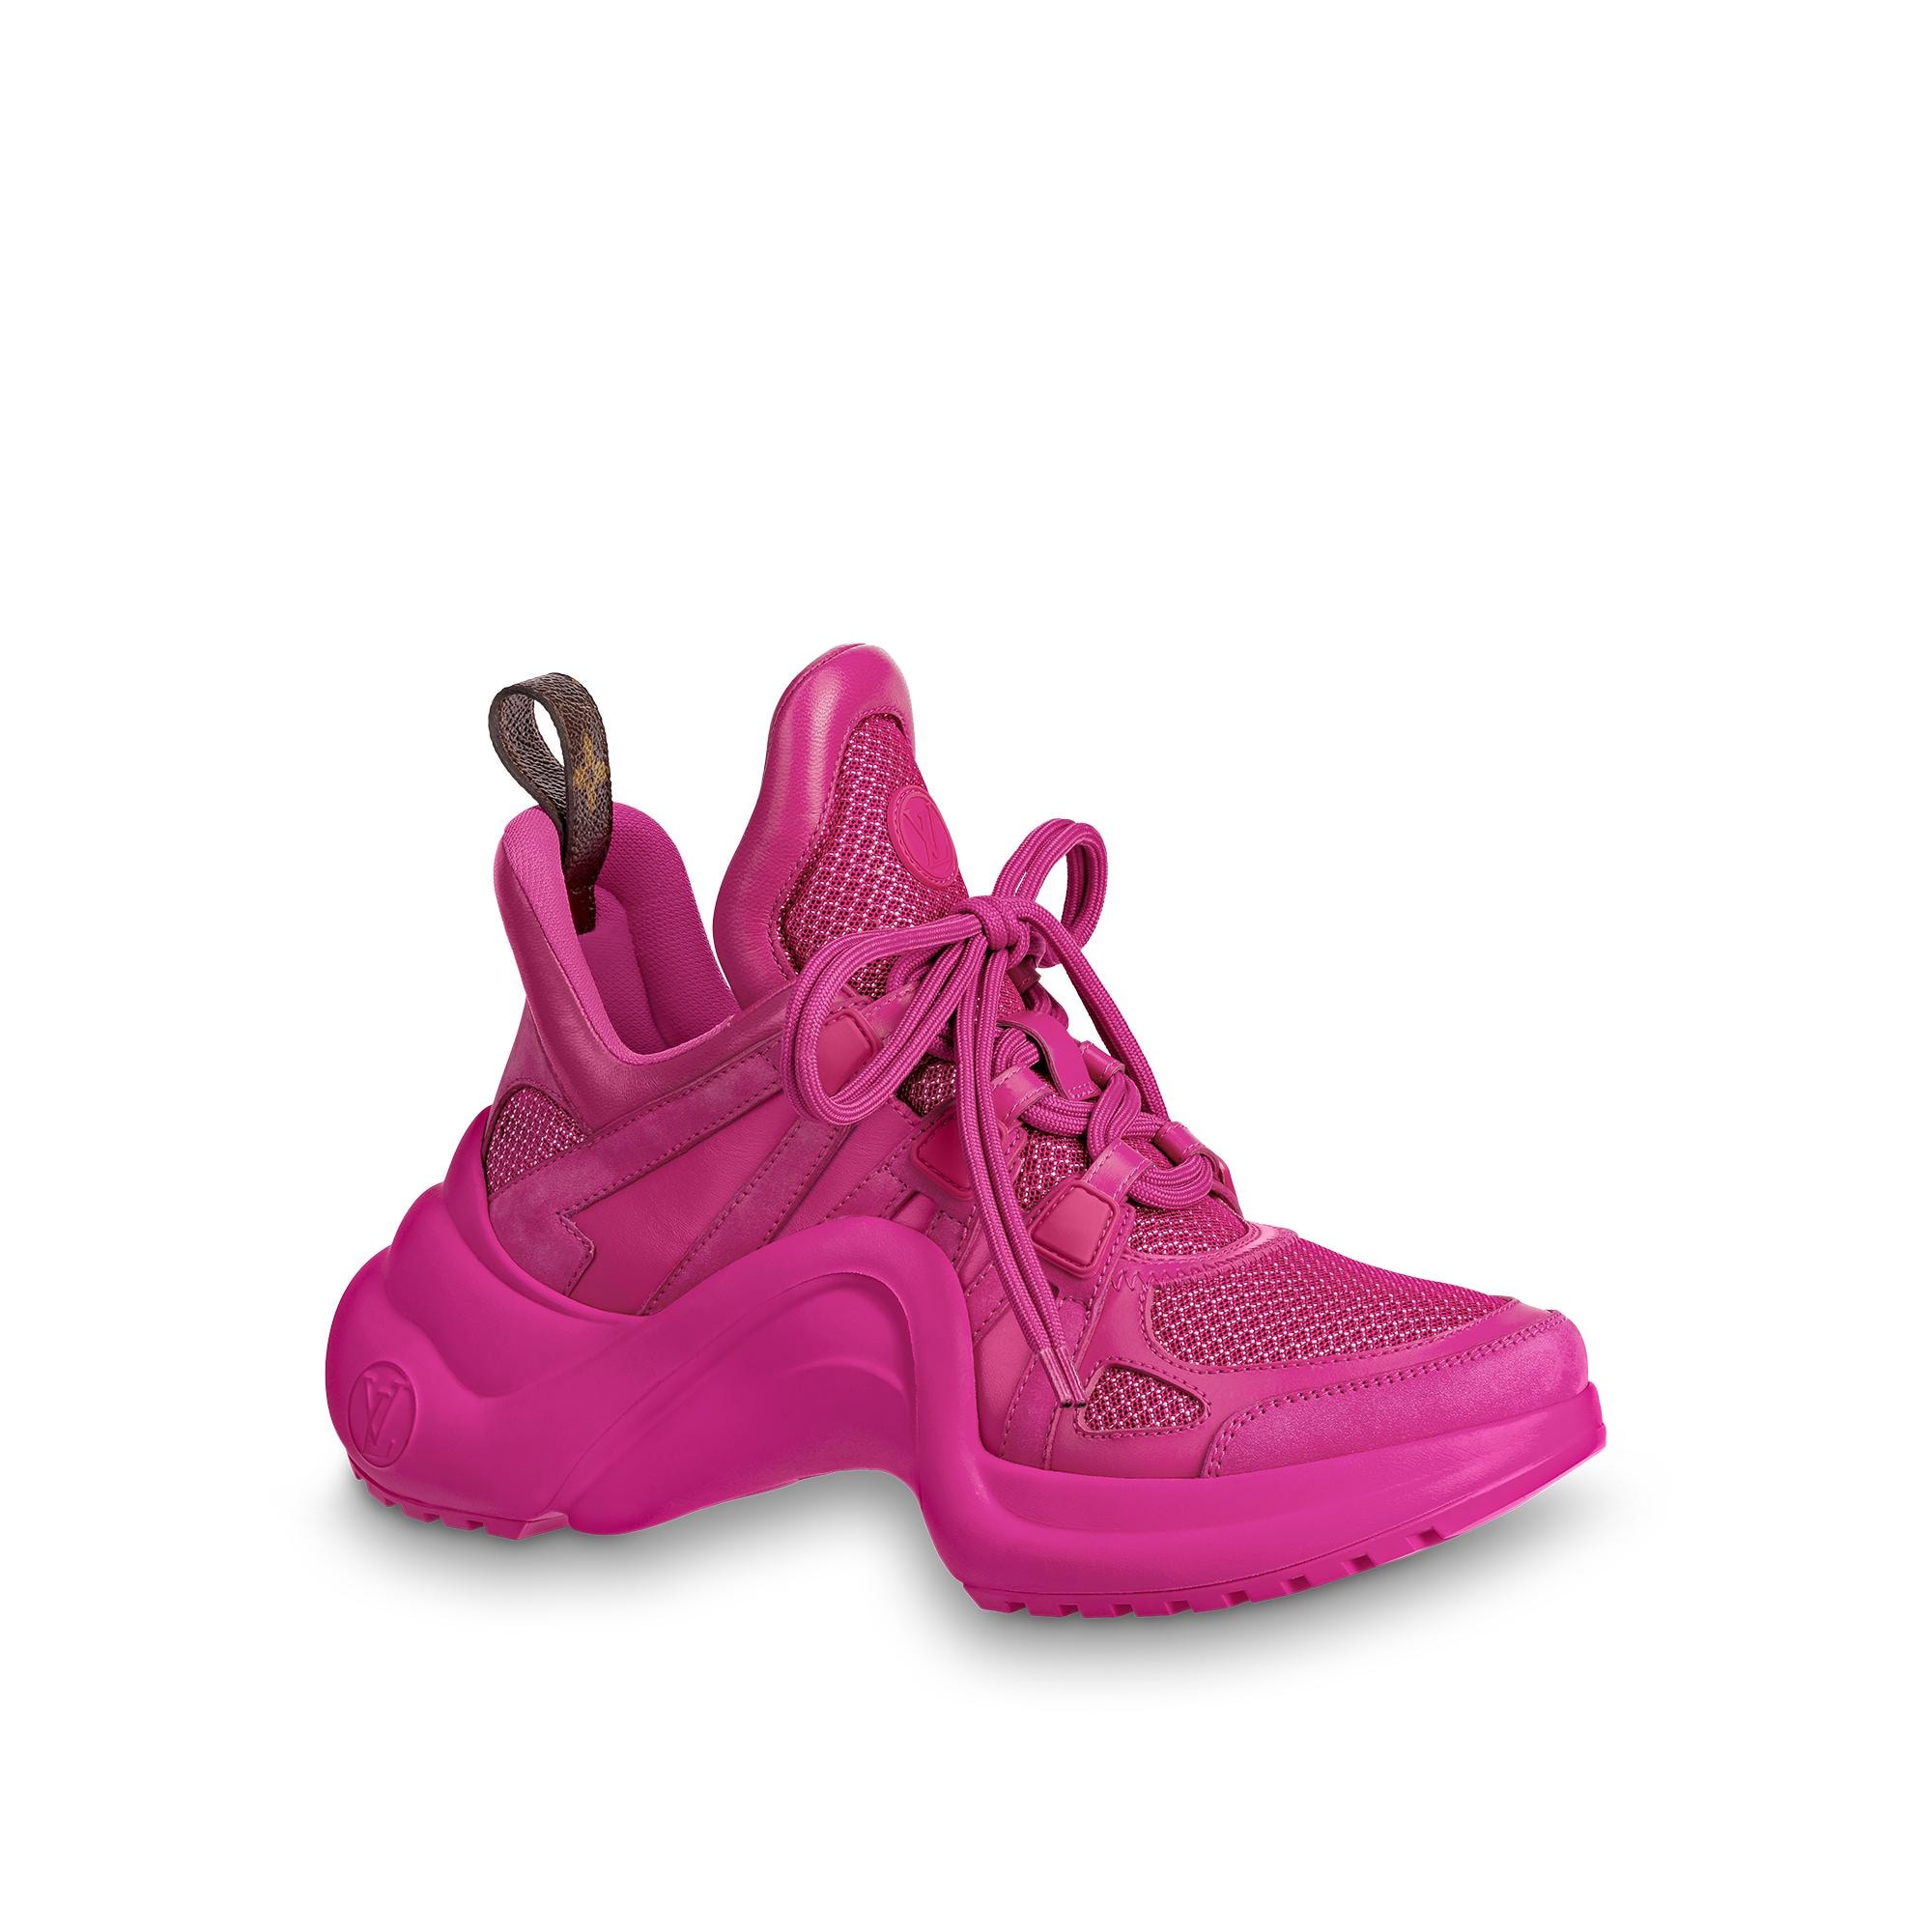 LV Archlight Sneaker Light Pink For Women - Fernize